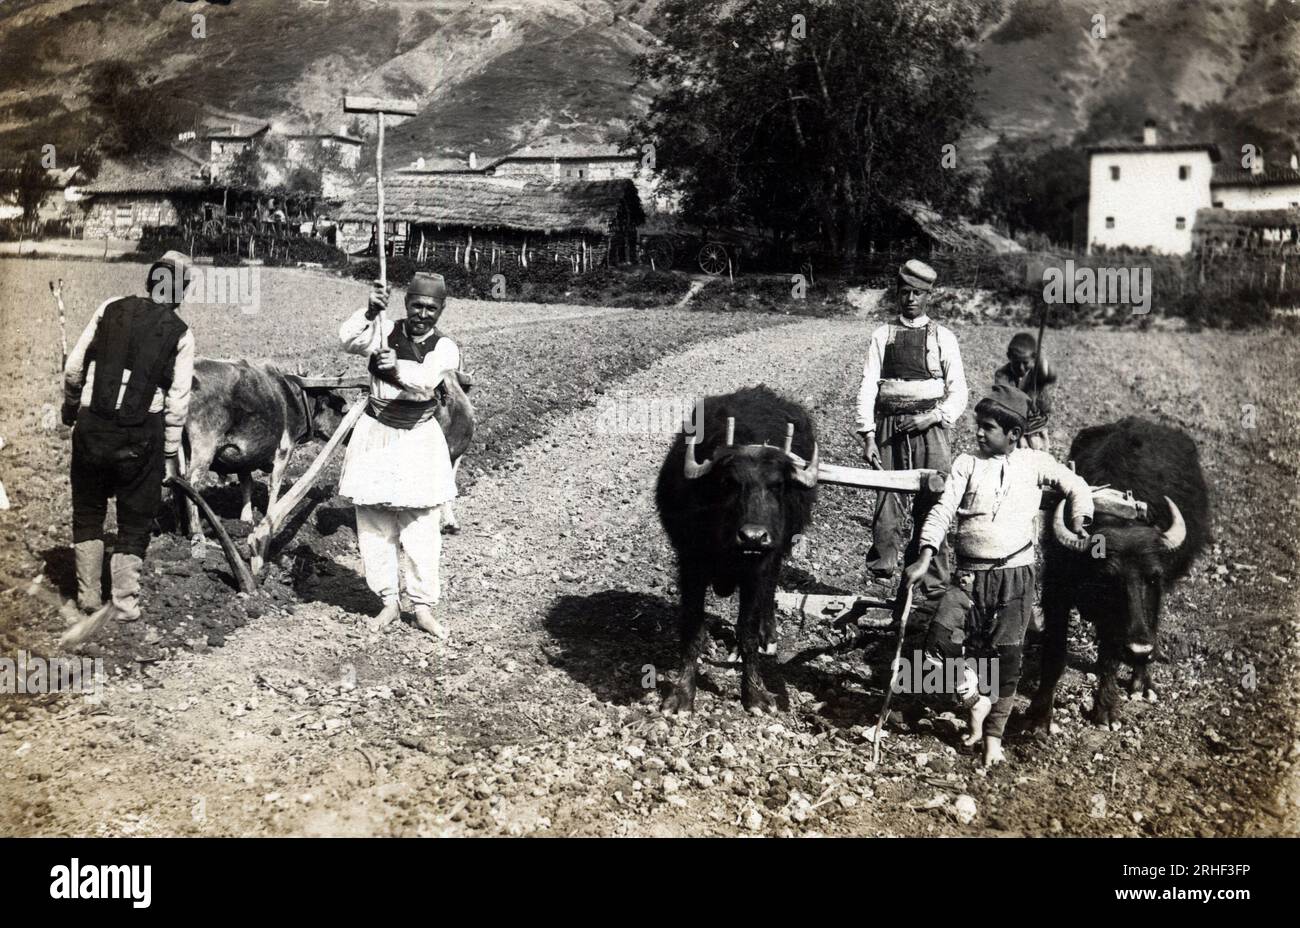 GRECE, Macedoine : paysans labourant un champ avec une charrue tiree par des buffles - Carte postale 1914-1918 Stockfoto